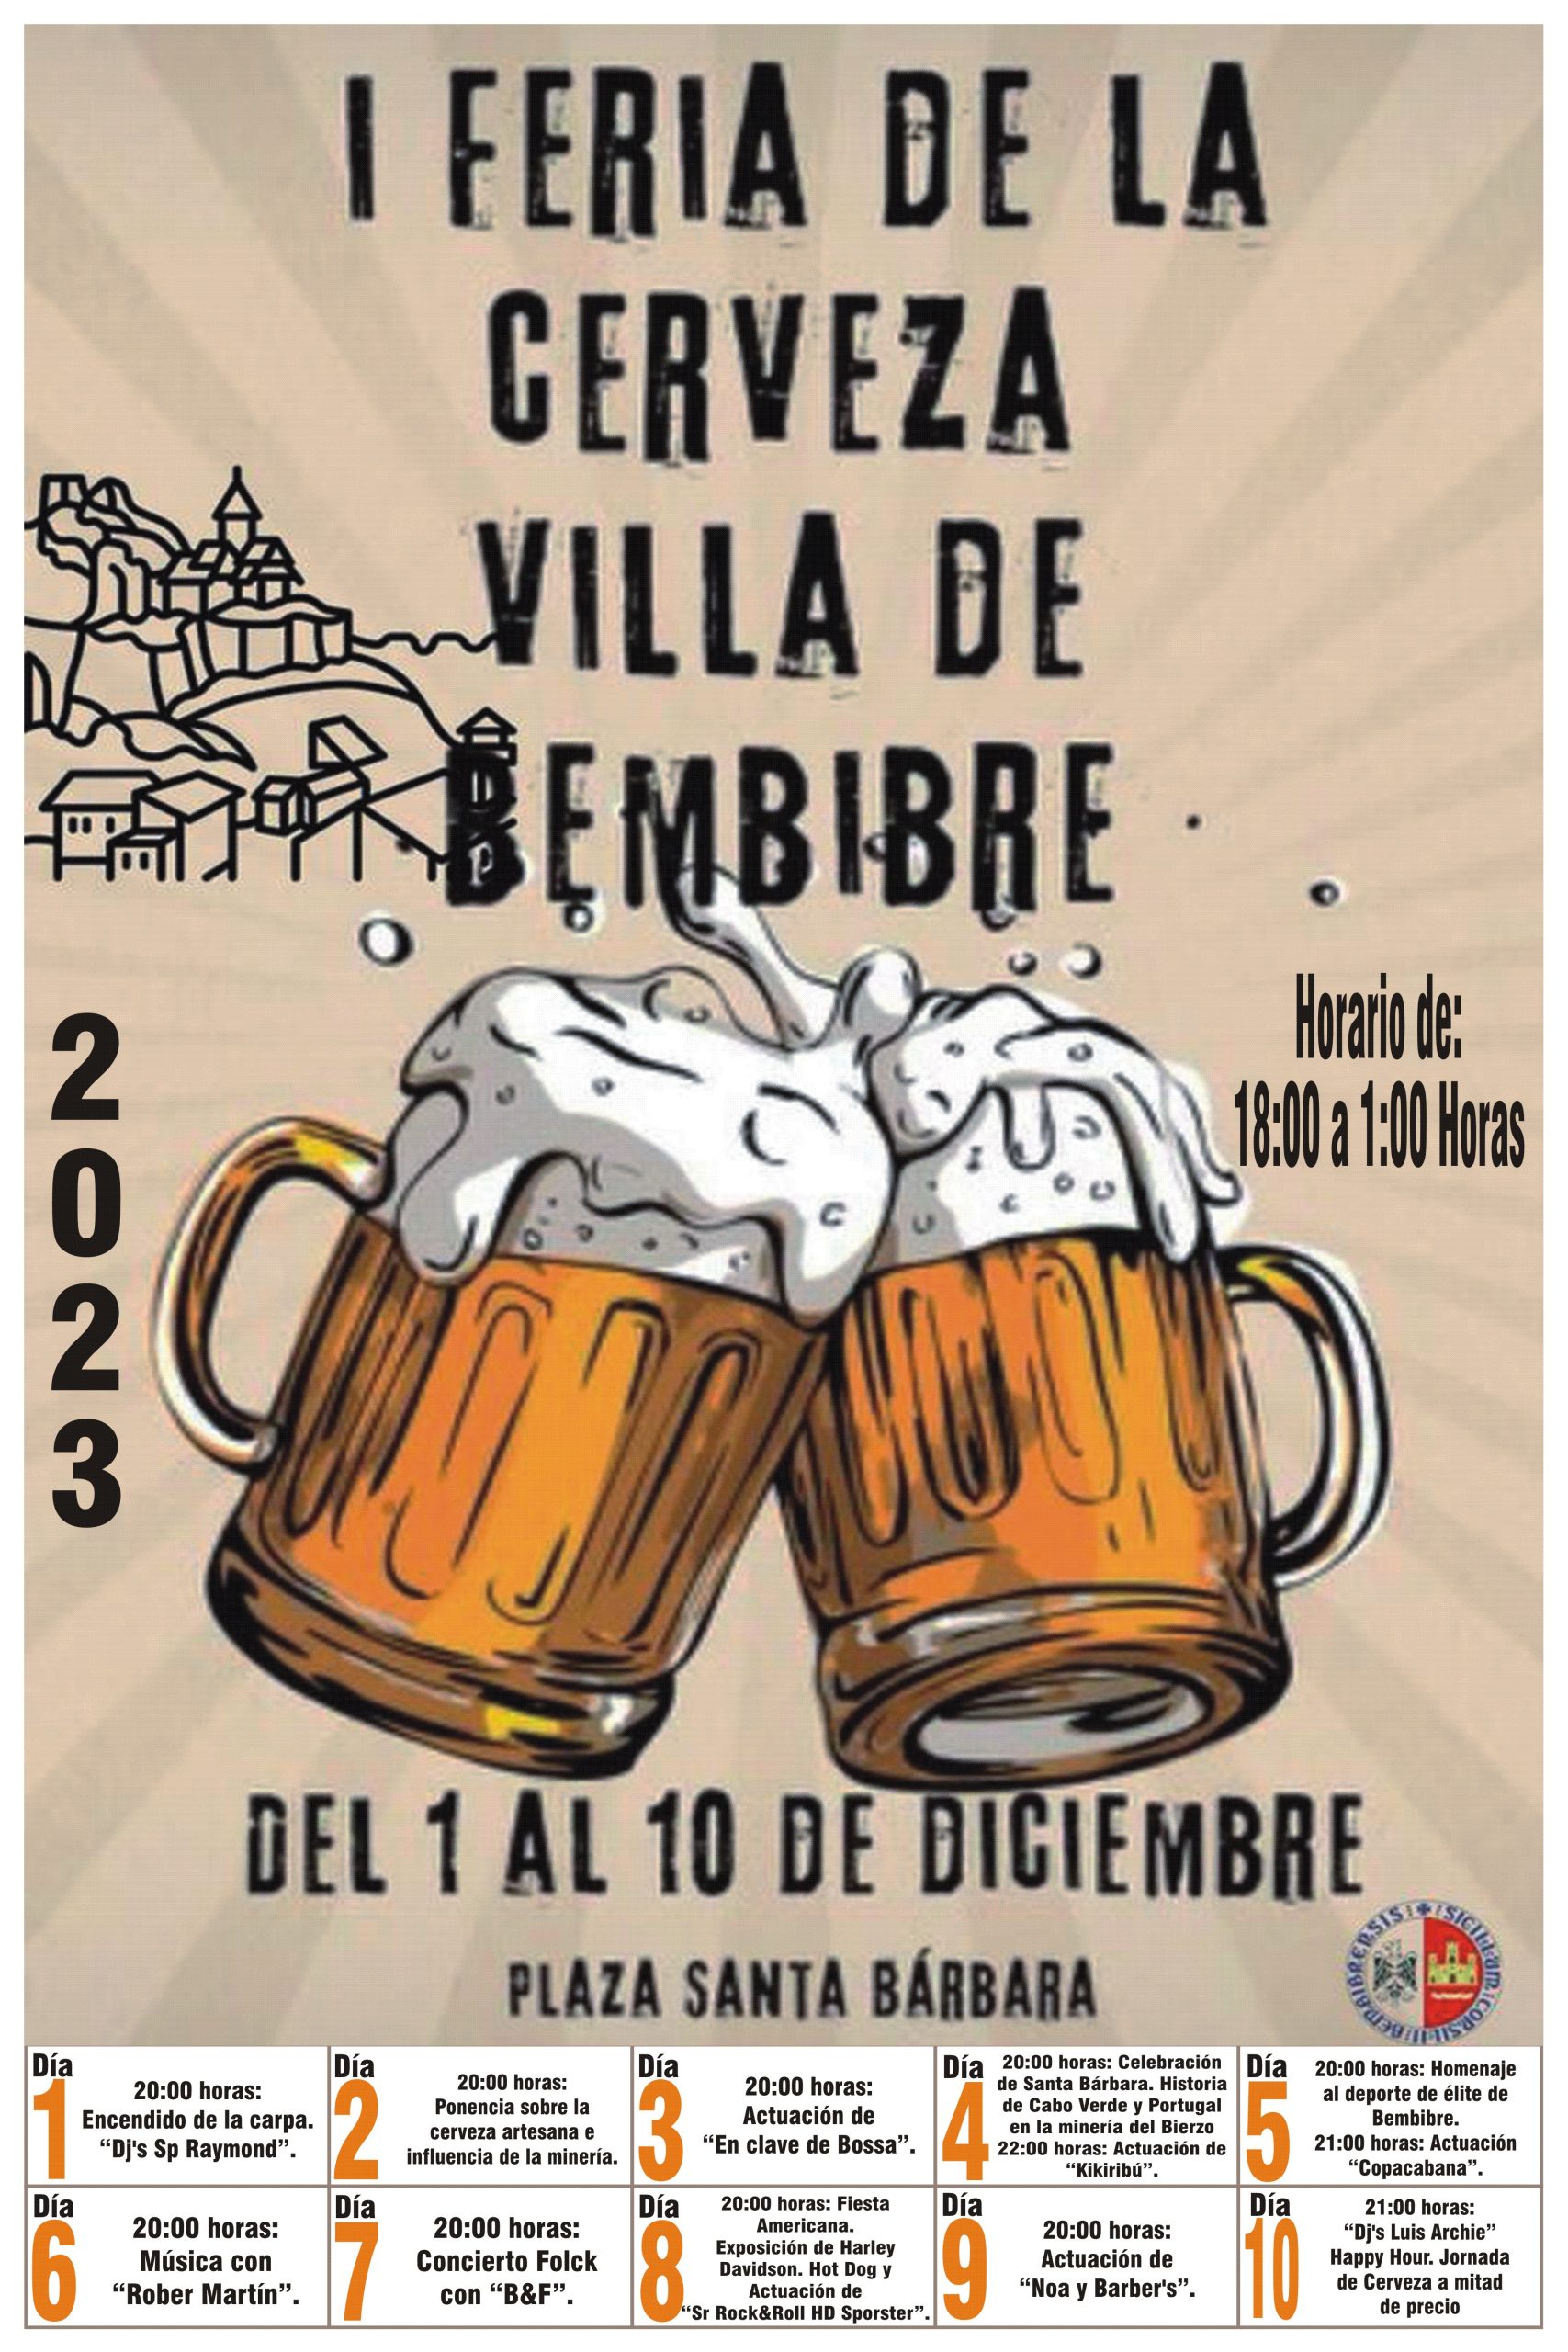 Bembibre organiza la I Feria de la cerveza Villa de Bembibre del 1 al 10 de diciembre 2